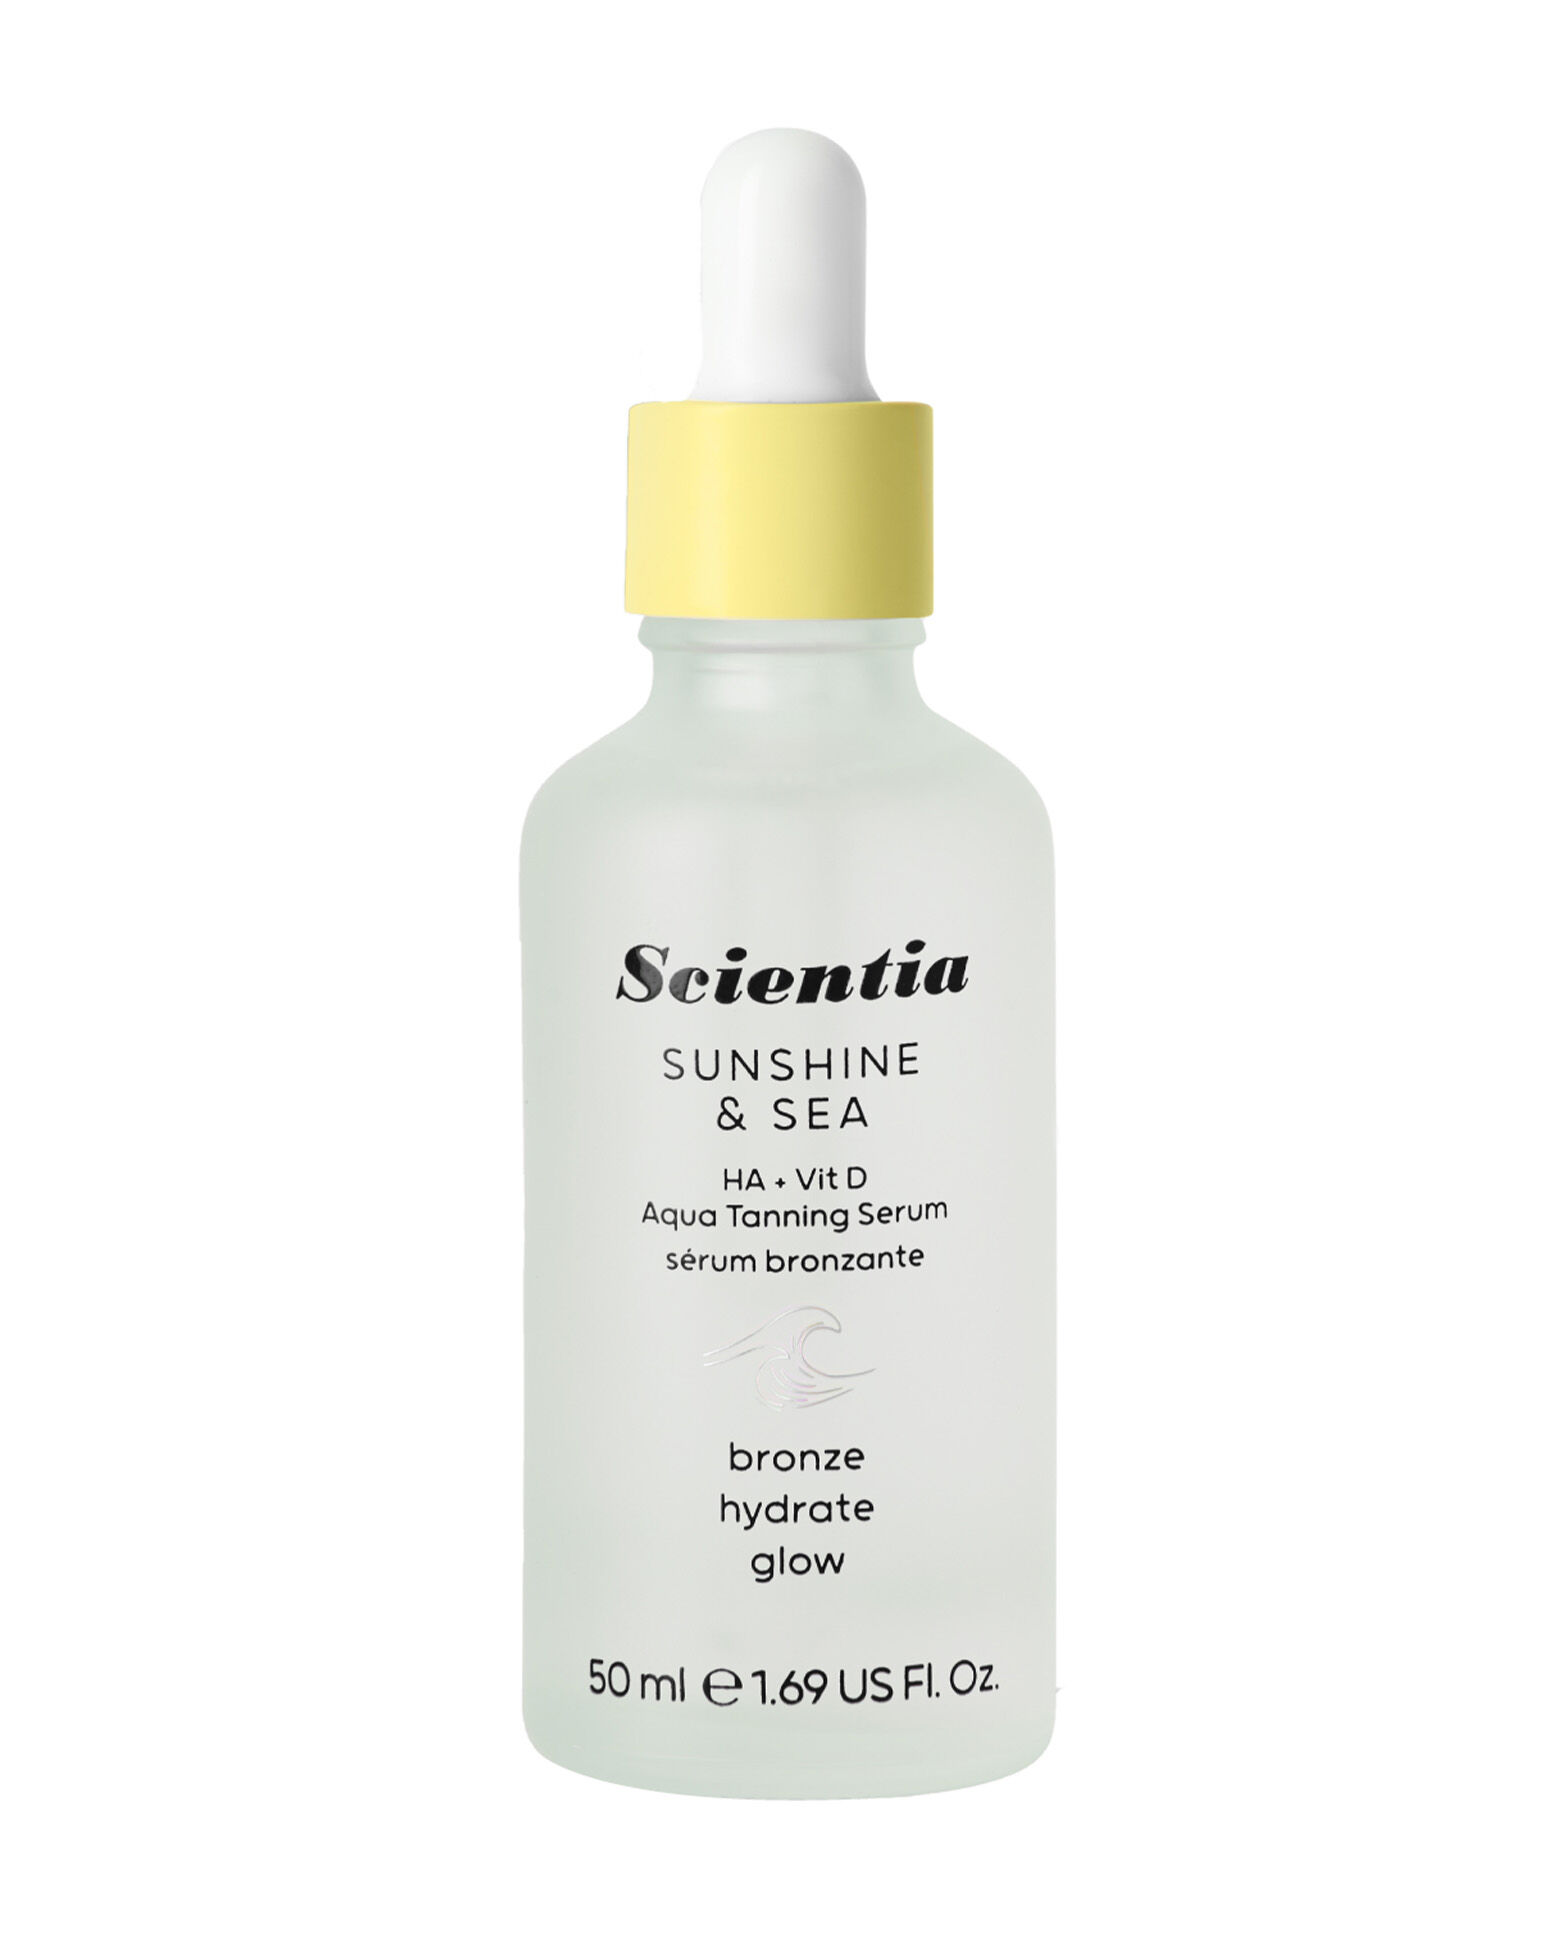 Scientia - Sunshine & Sea HA + Vit D Aqua Tanning Serum